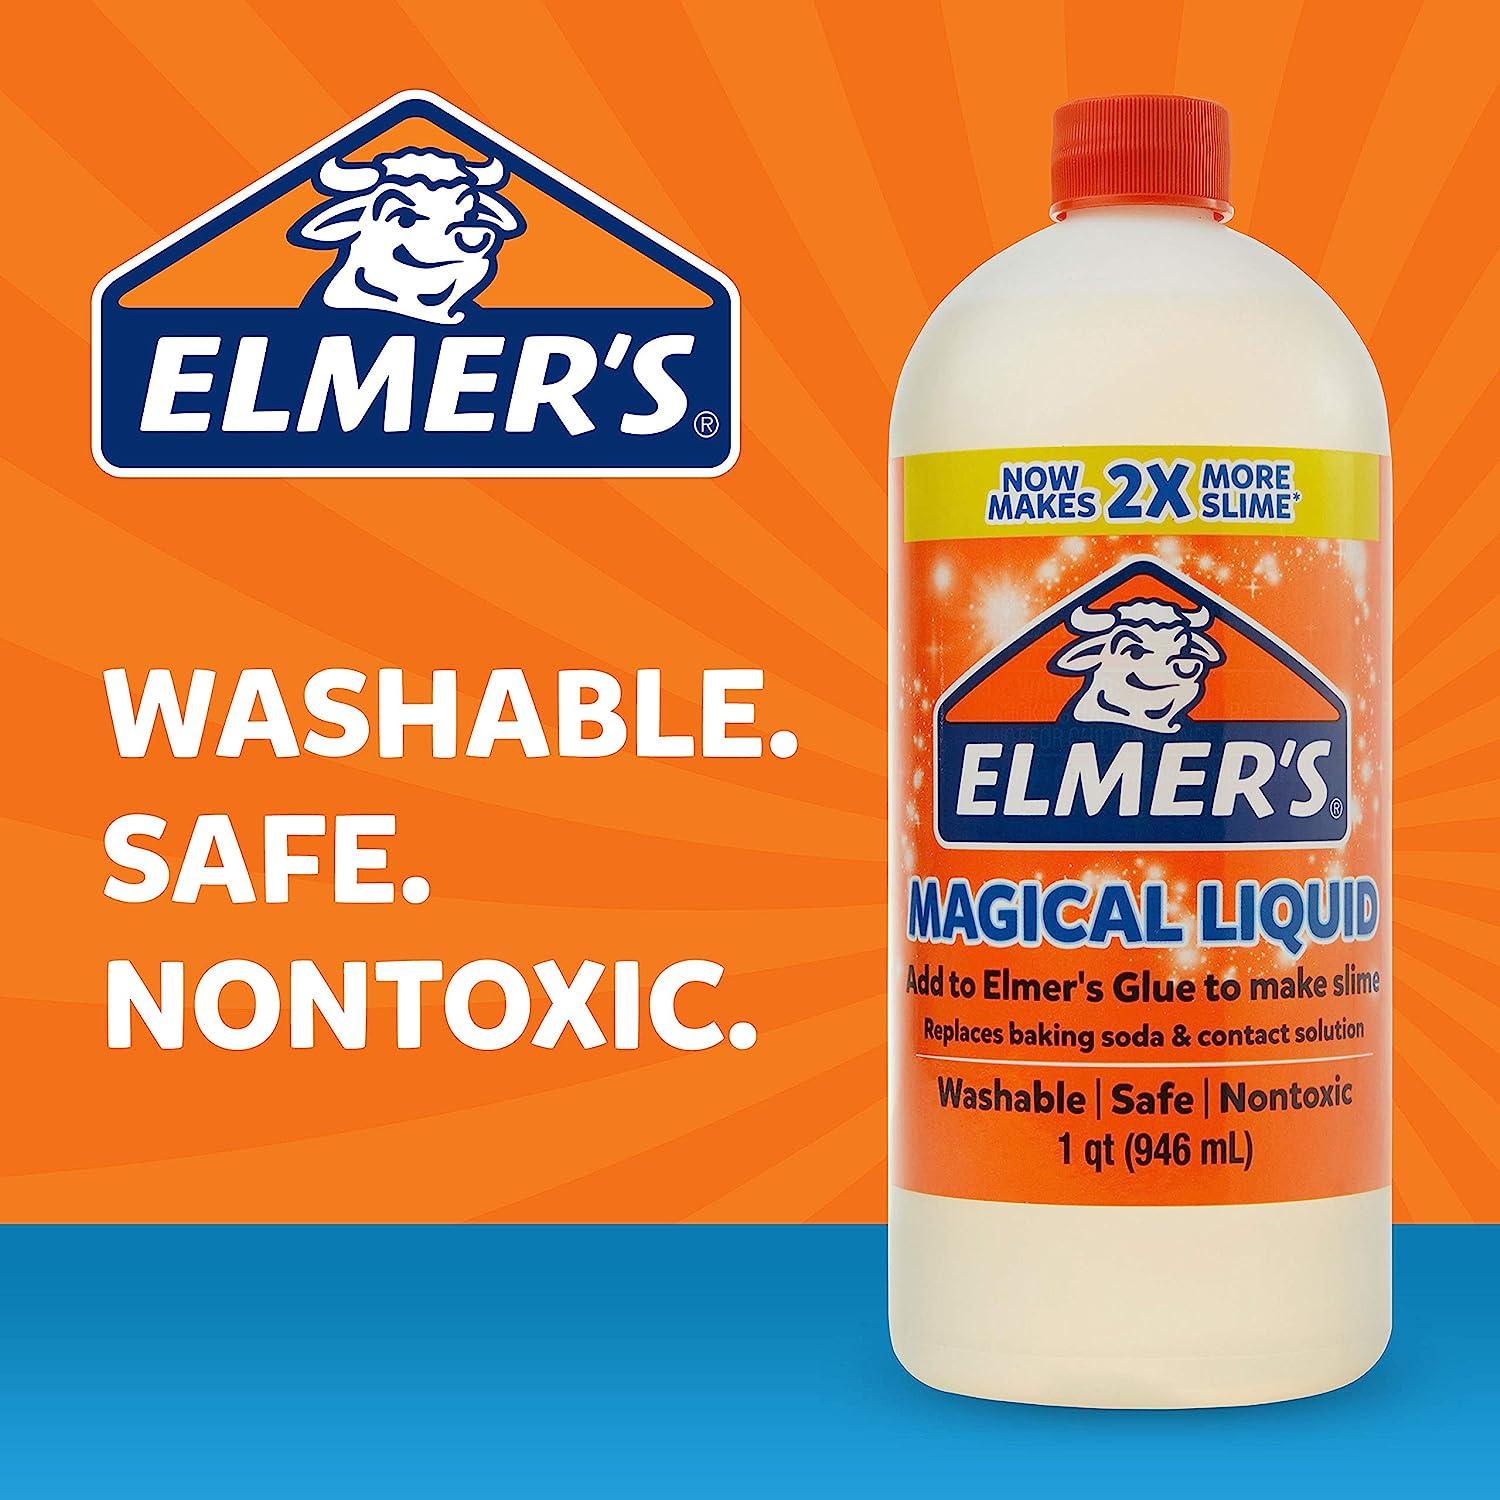 Elmers Magical Liquid